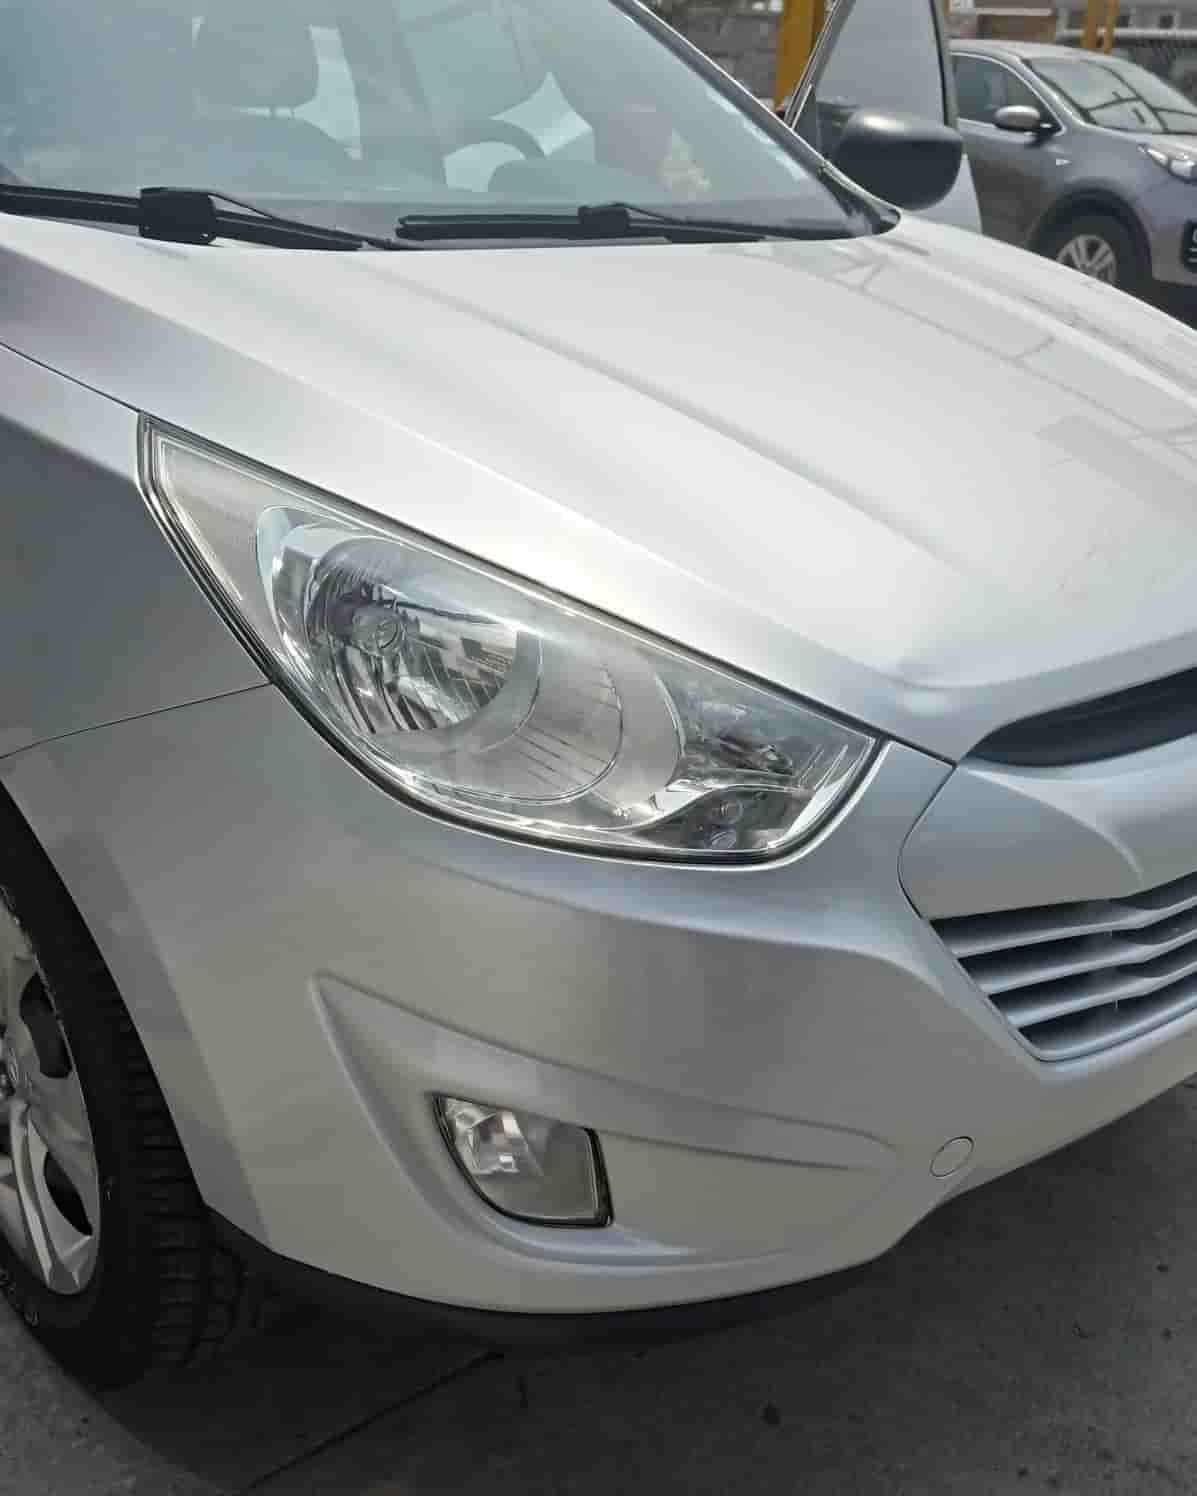 Taller de pintura automotriz en guayaquil para super SUV kia blanco